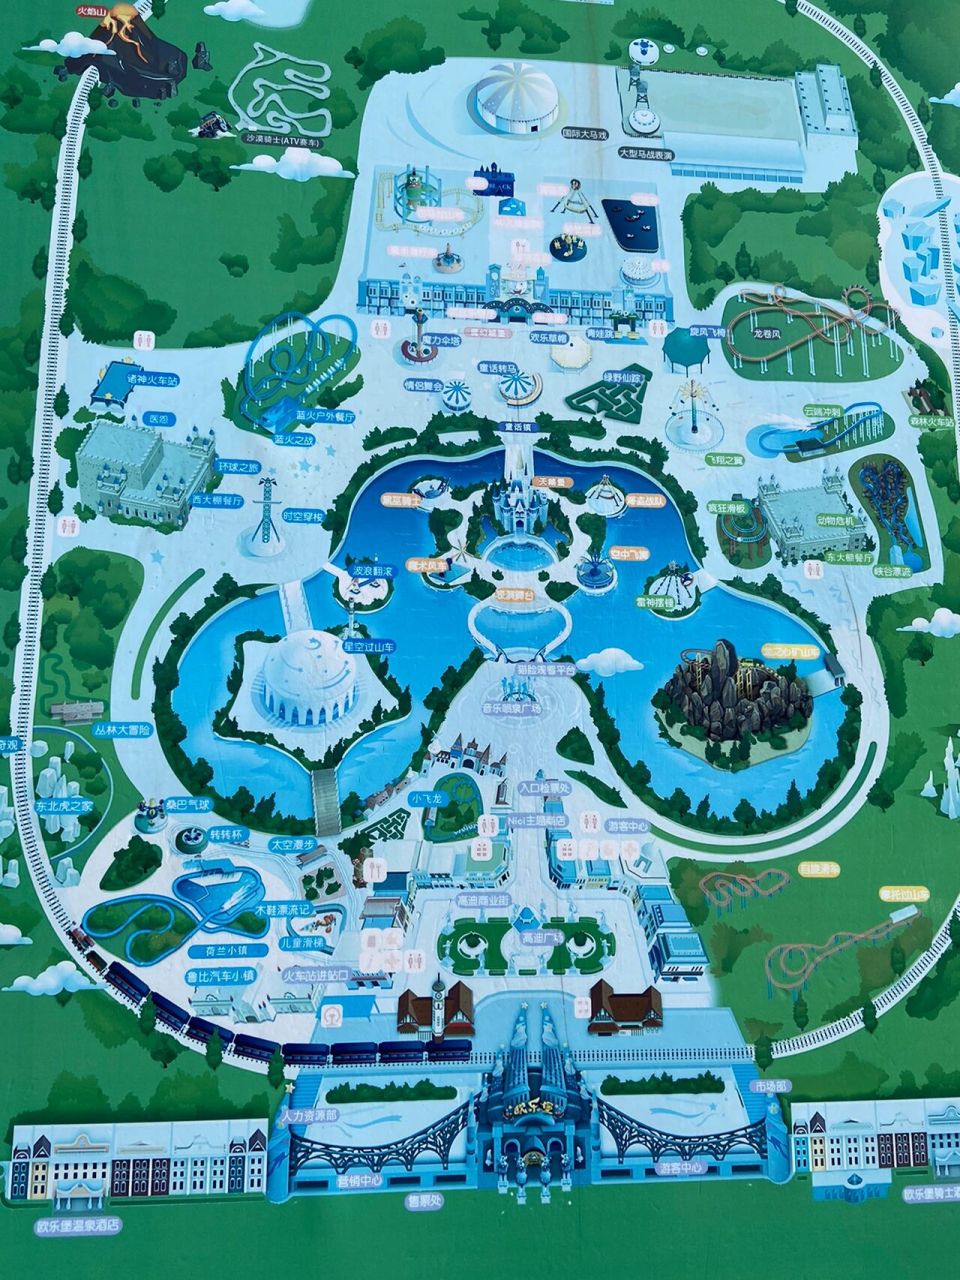 泉城欧乐堡游玩地图   建议跟着地图游玩!